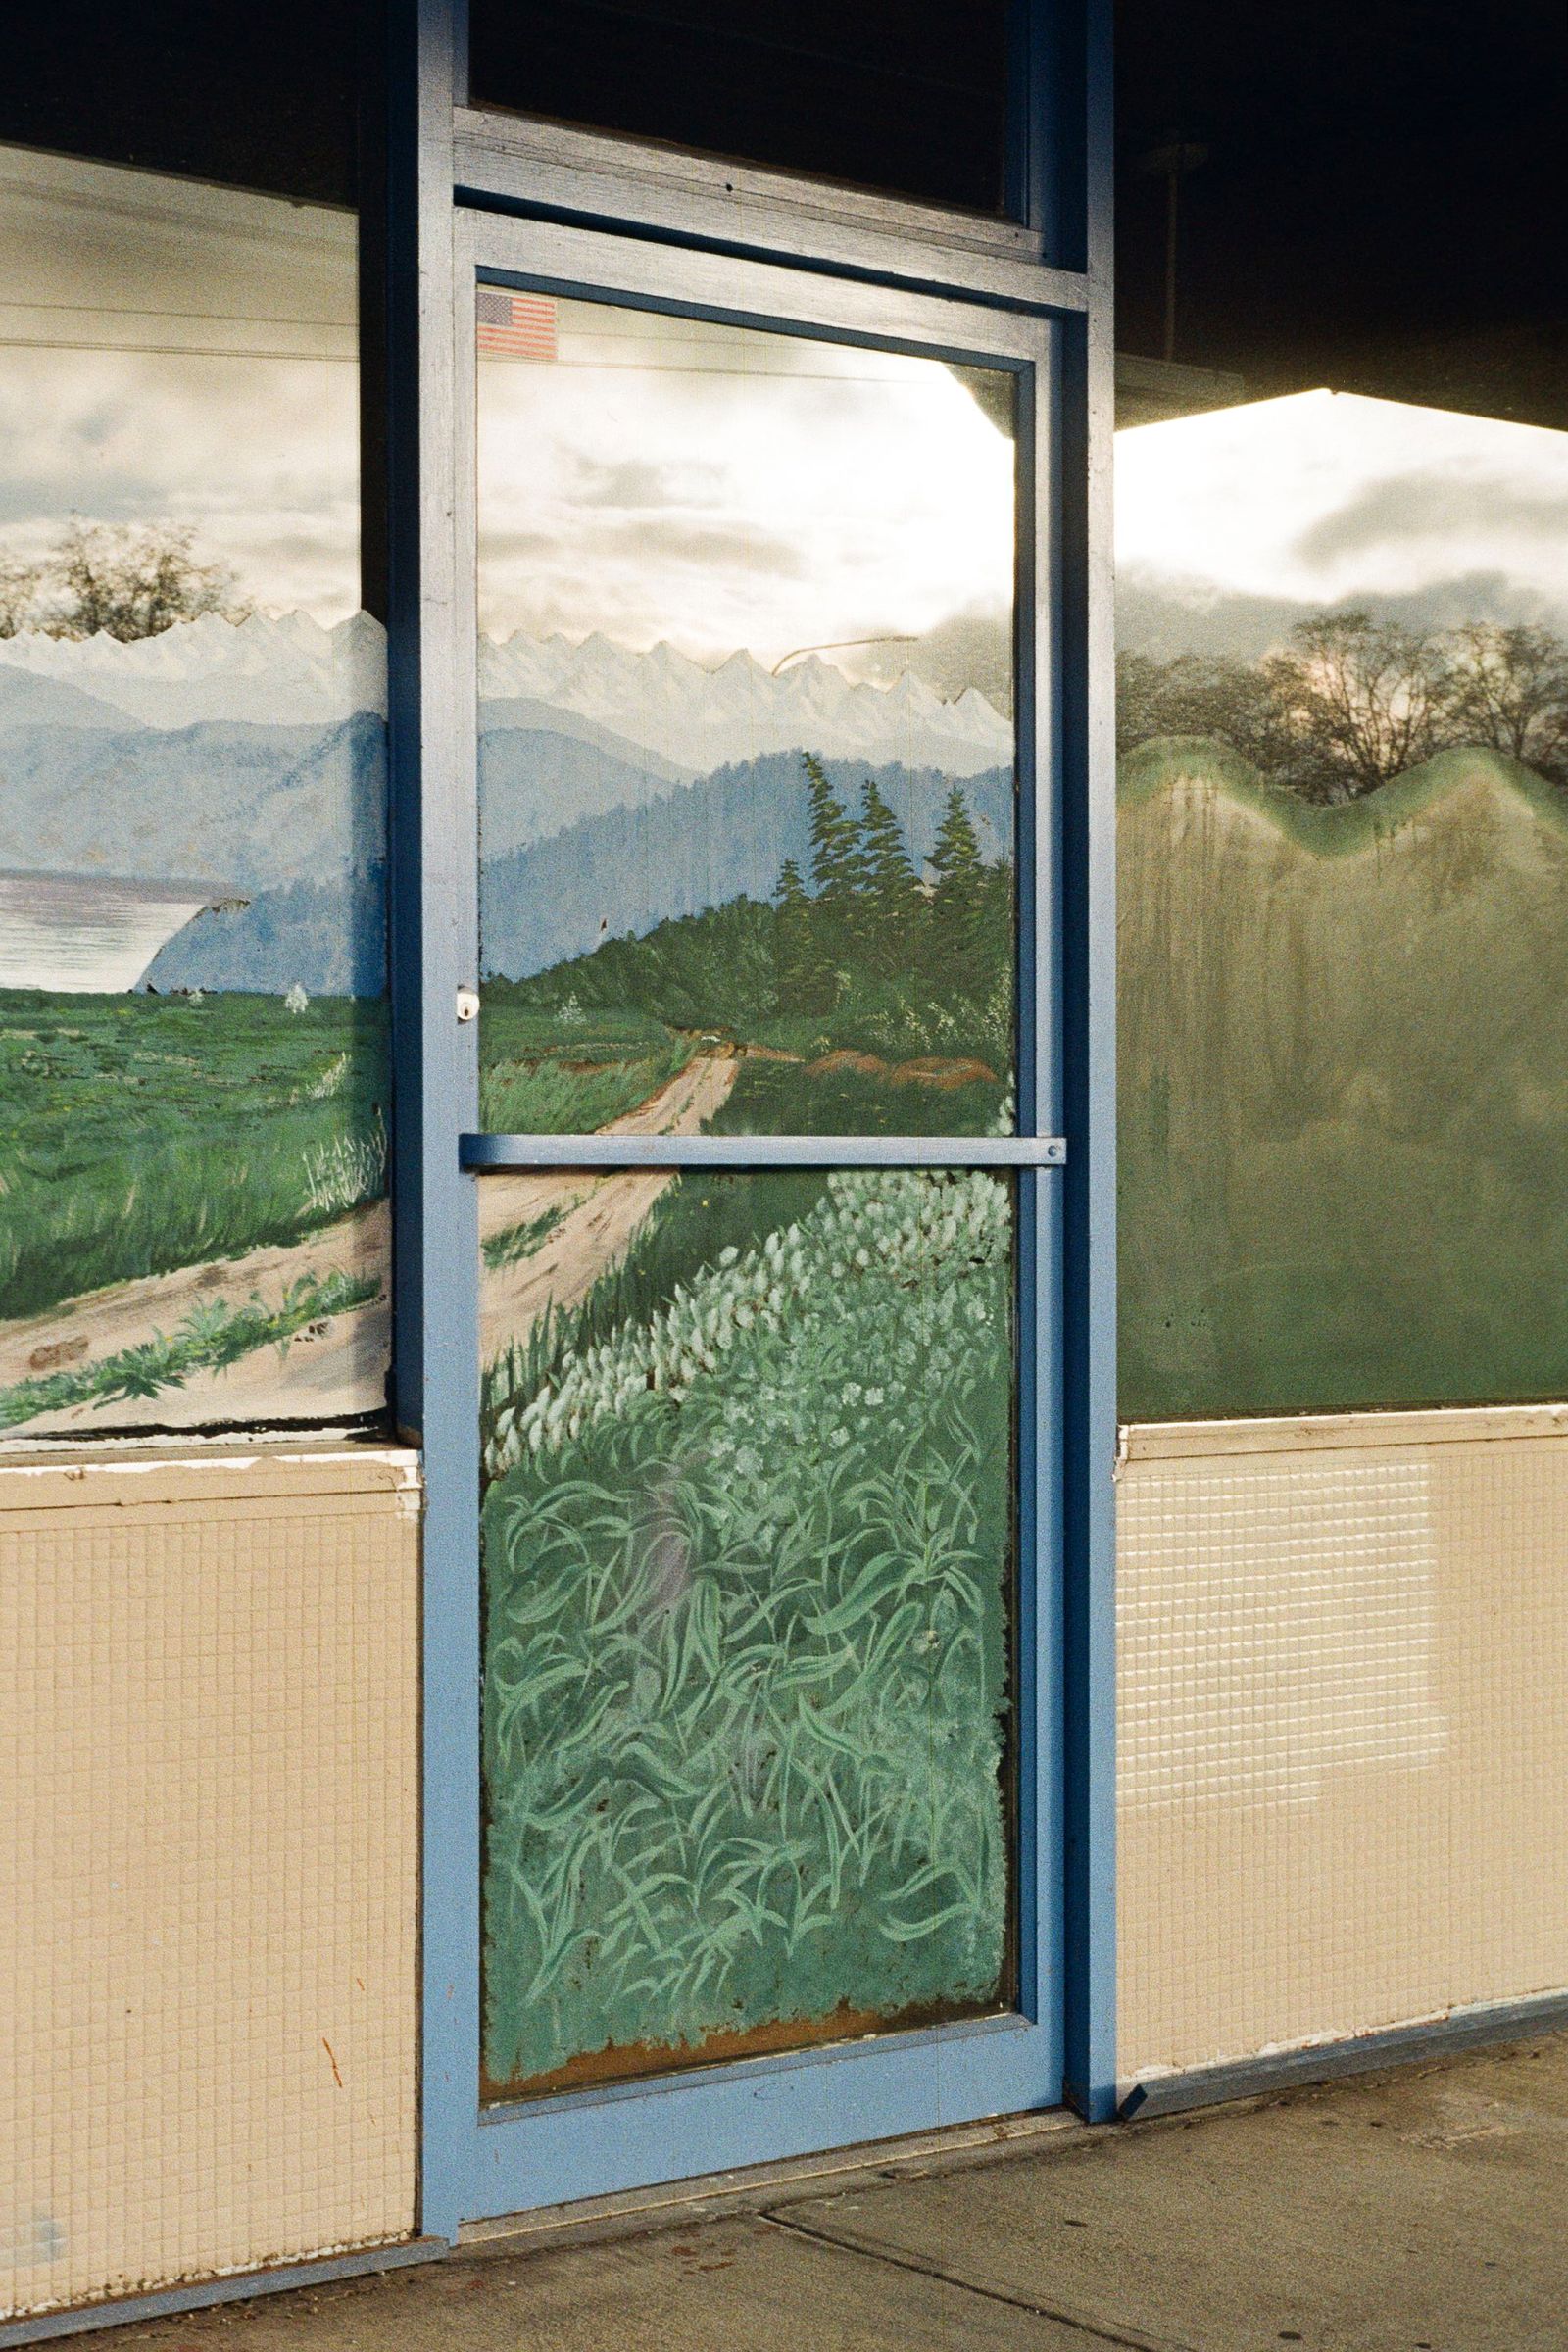 © Joshua H Phelps - Mural on Window and Door Panes | Stanwood, Washington